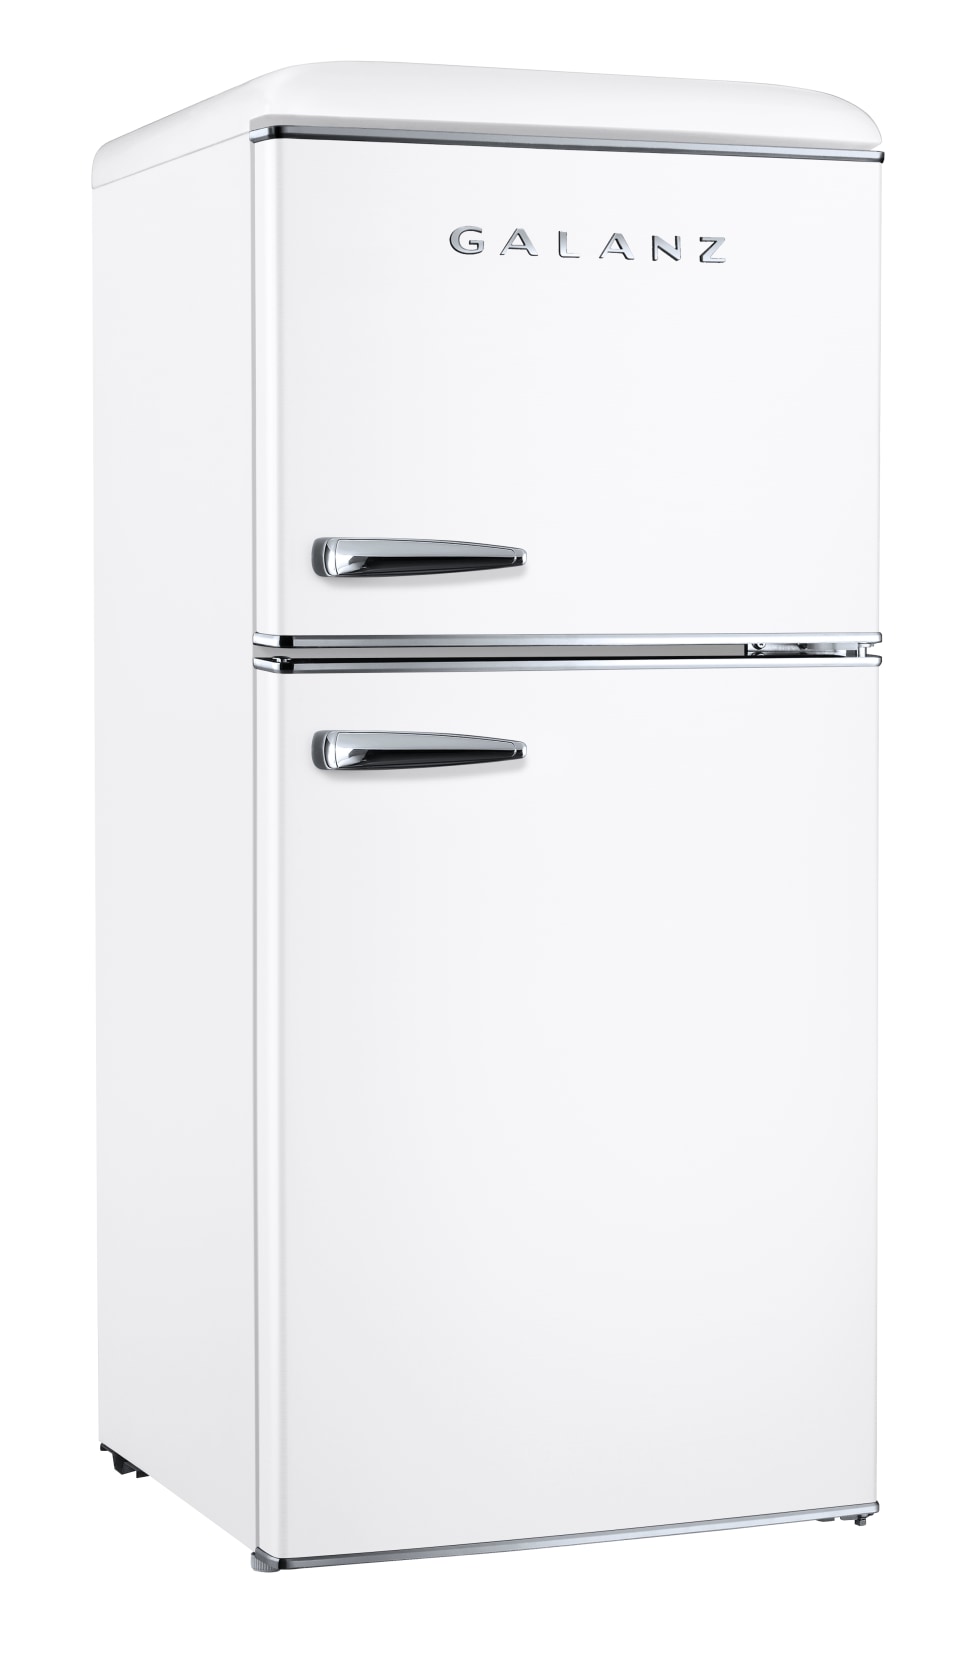 40++ Galanz mini fridge warranty ideas in 2021 